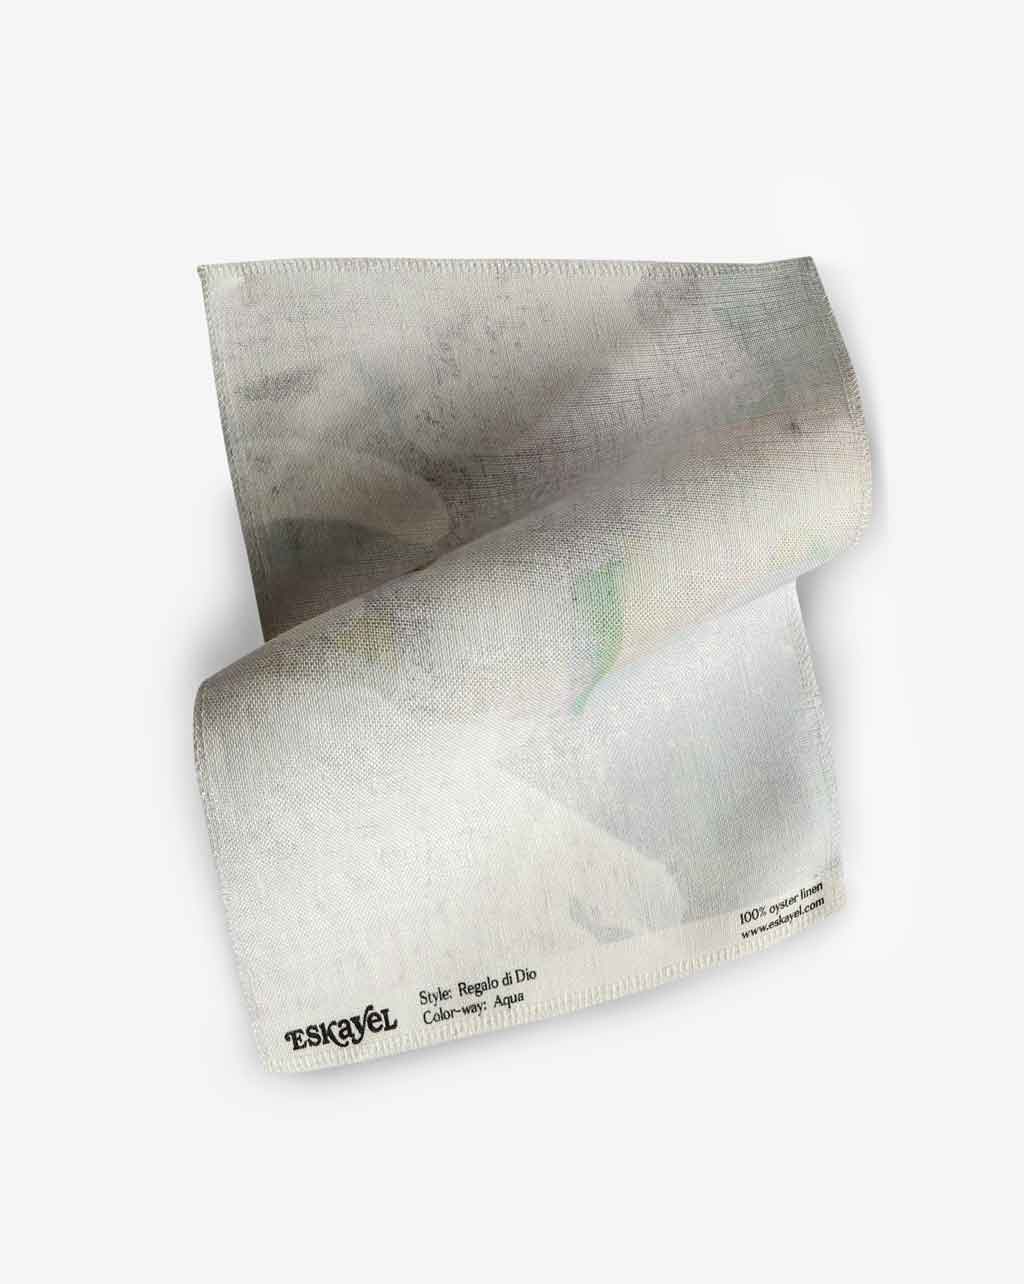 A white Regalo di Dio Fabric Sample Aqua napkin on a surface